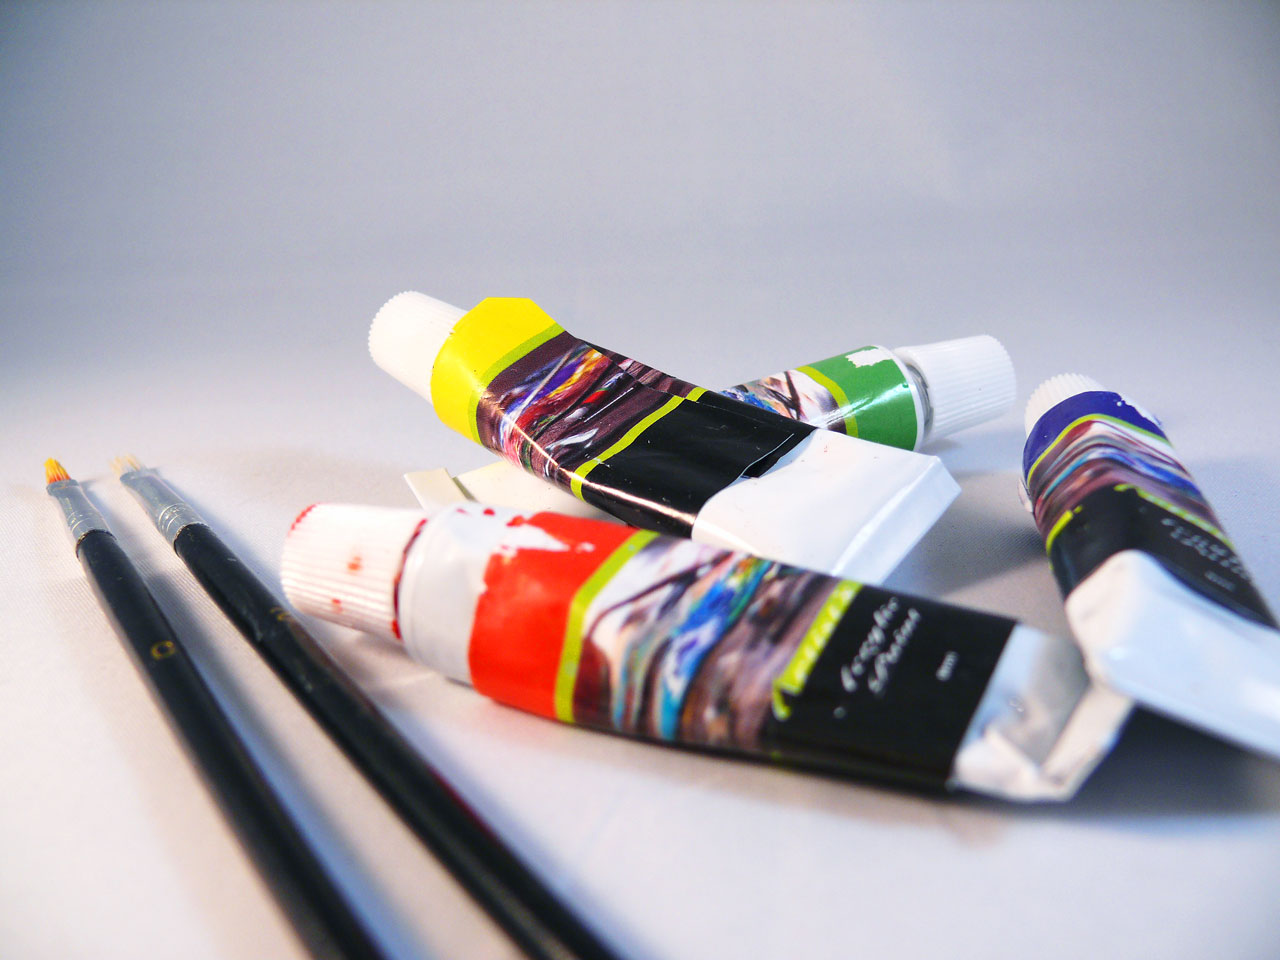 Paints, paint brushes